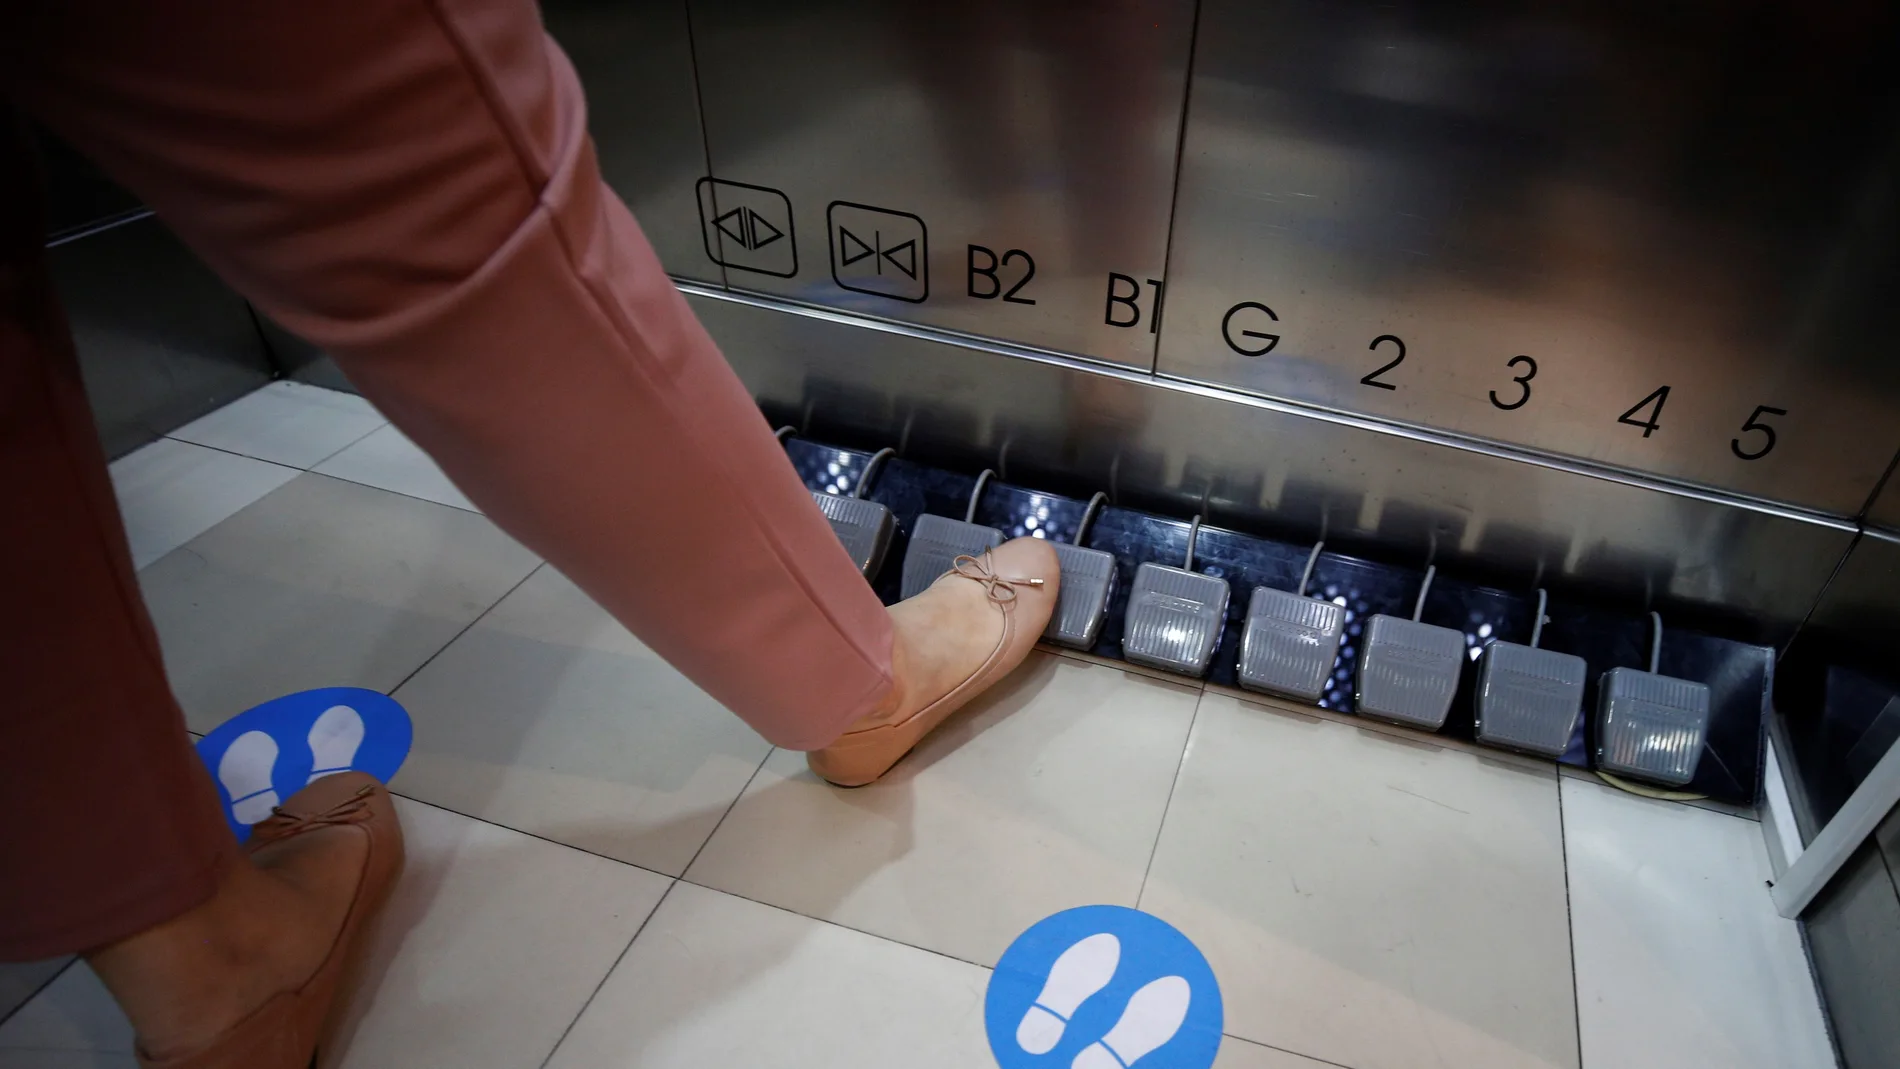 -FOTODELDIA- Bangkok (Tailandia), 20/05/2020.- Una clienta selecciona con el pie el piso al que se dirige en un ascensor del centro comercial Seacon Square de Bangkok (Tailandia) este miércoles. Los ascensores han sido modificados para evitar la propagación del COVID-19. EFE/Narong Sangnak